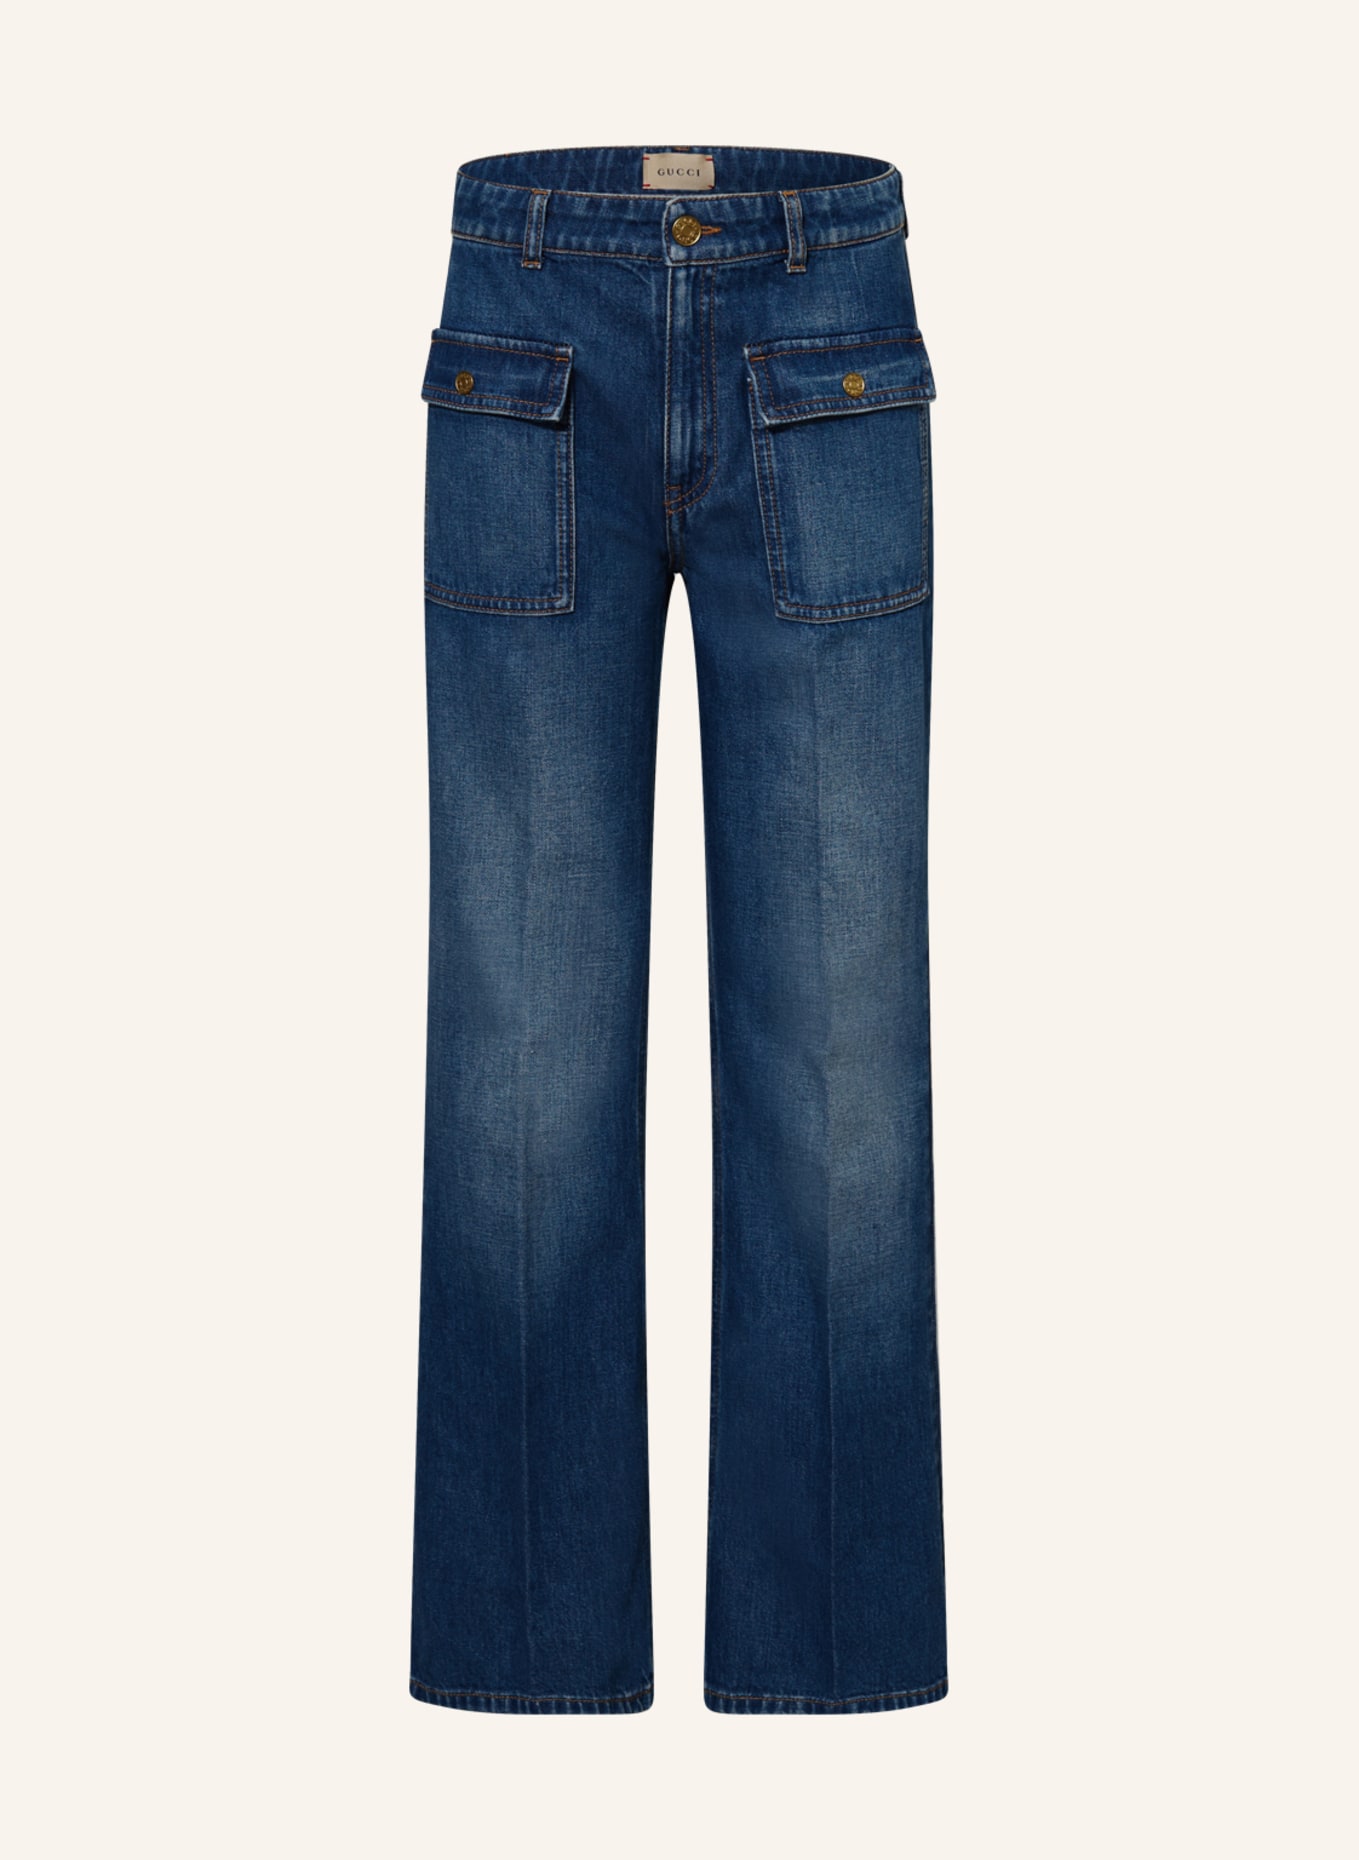 GUCCI Jeans, Farbe: BLAU (Bild 1)